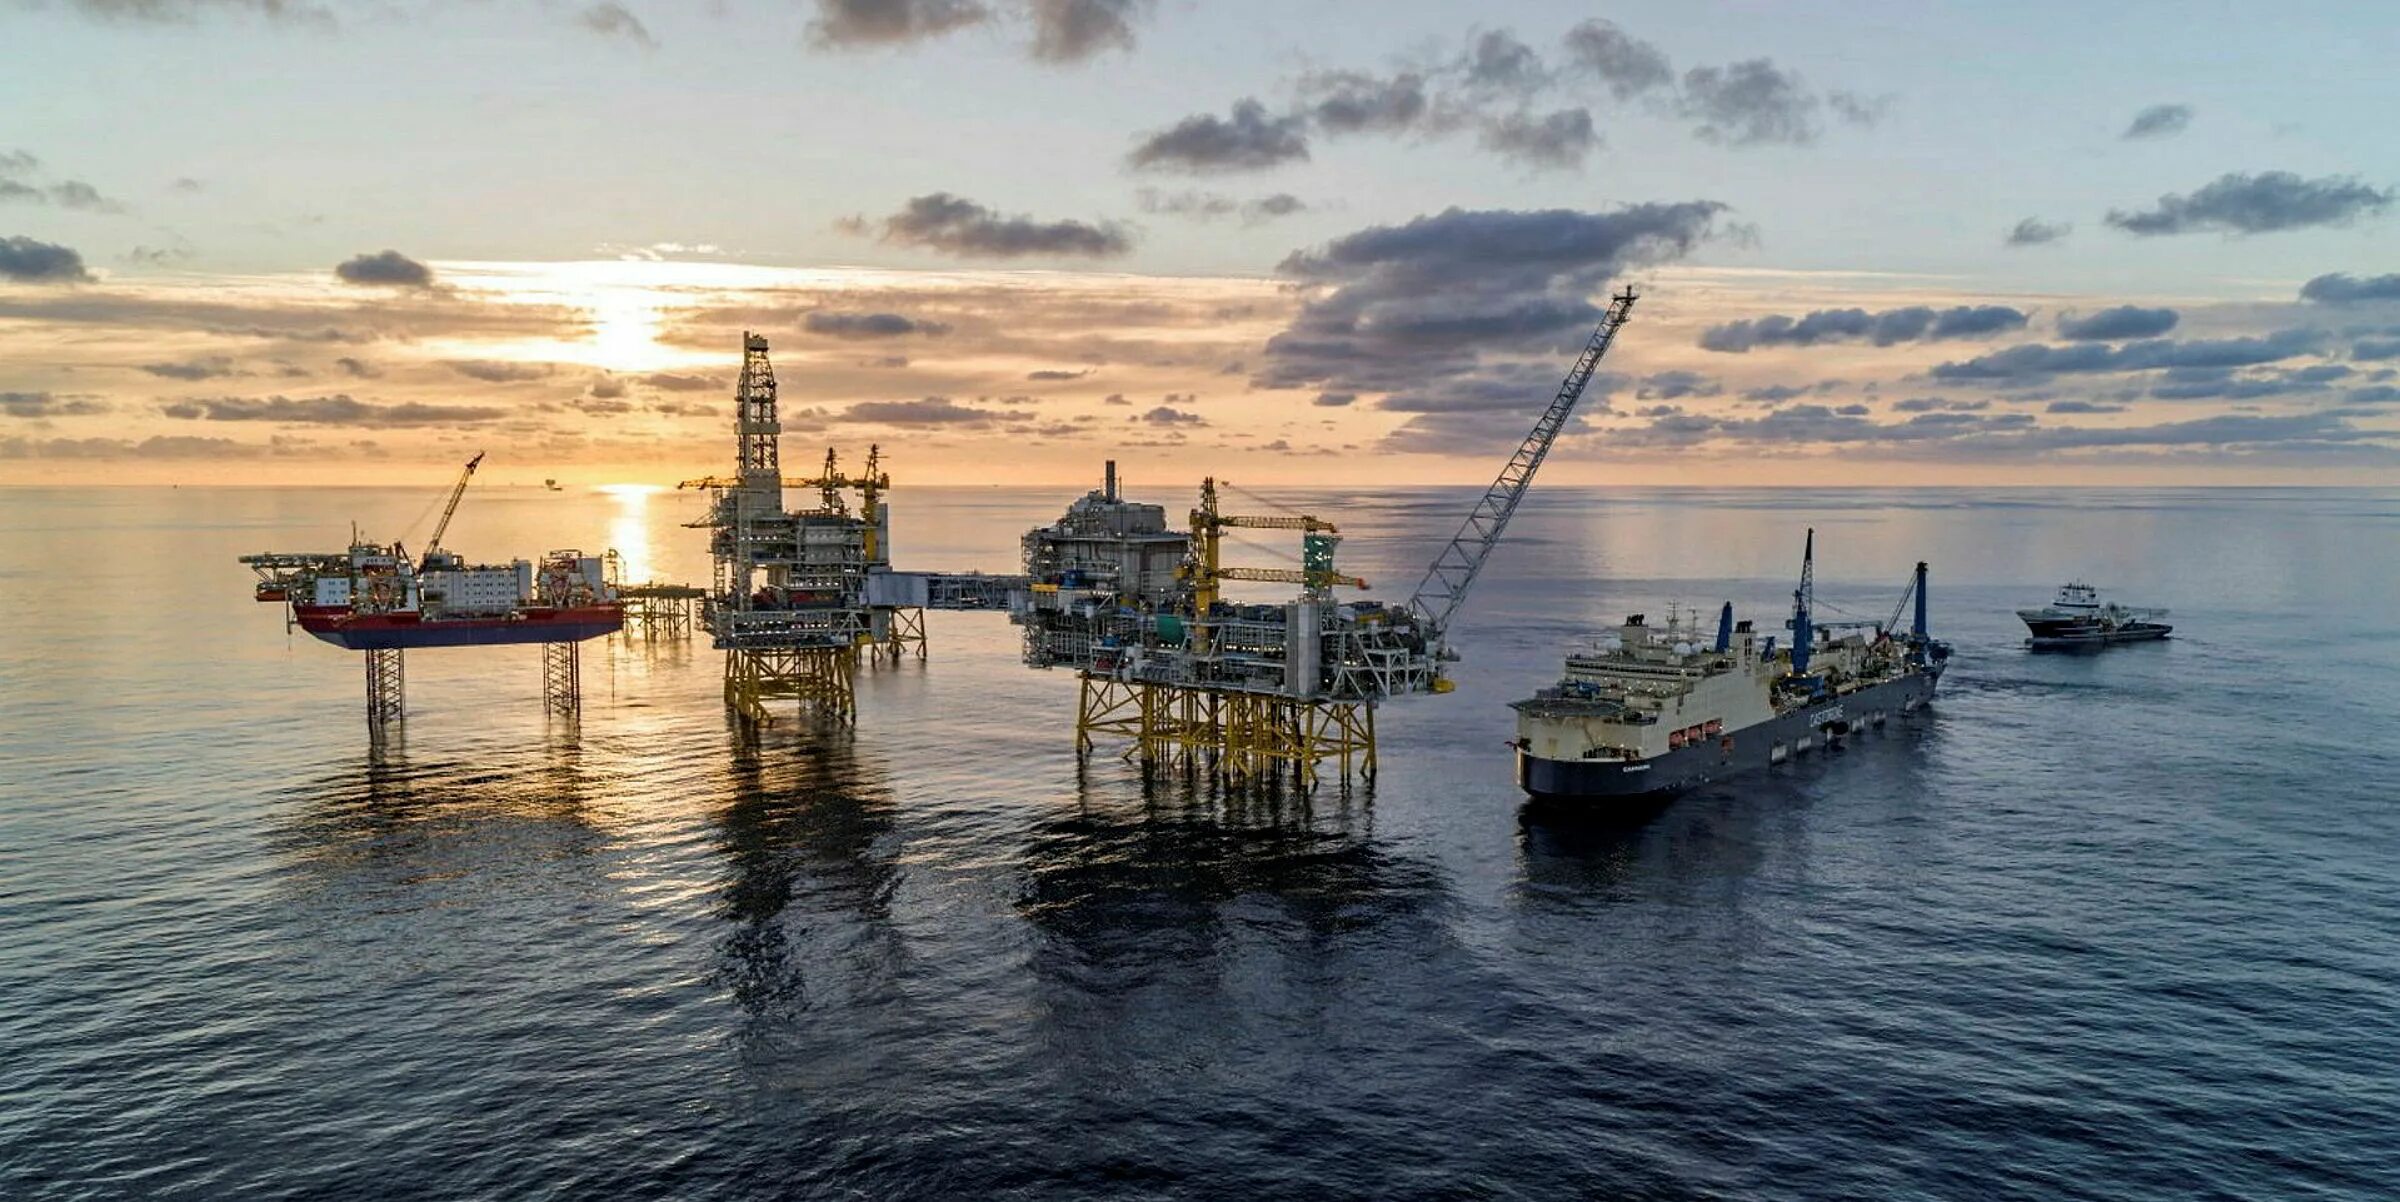 Добыча нефти в европе. Saipem castorone. Johan Sverdrup месторождение. Нефтедобыча в Северном море. Нефть на шельфе Северного моря.